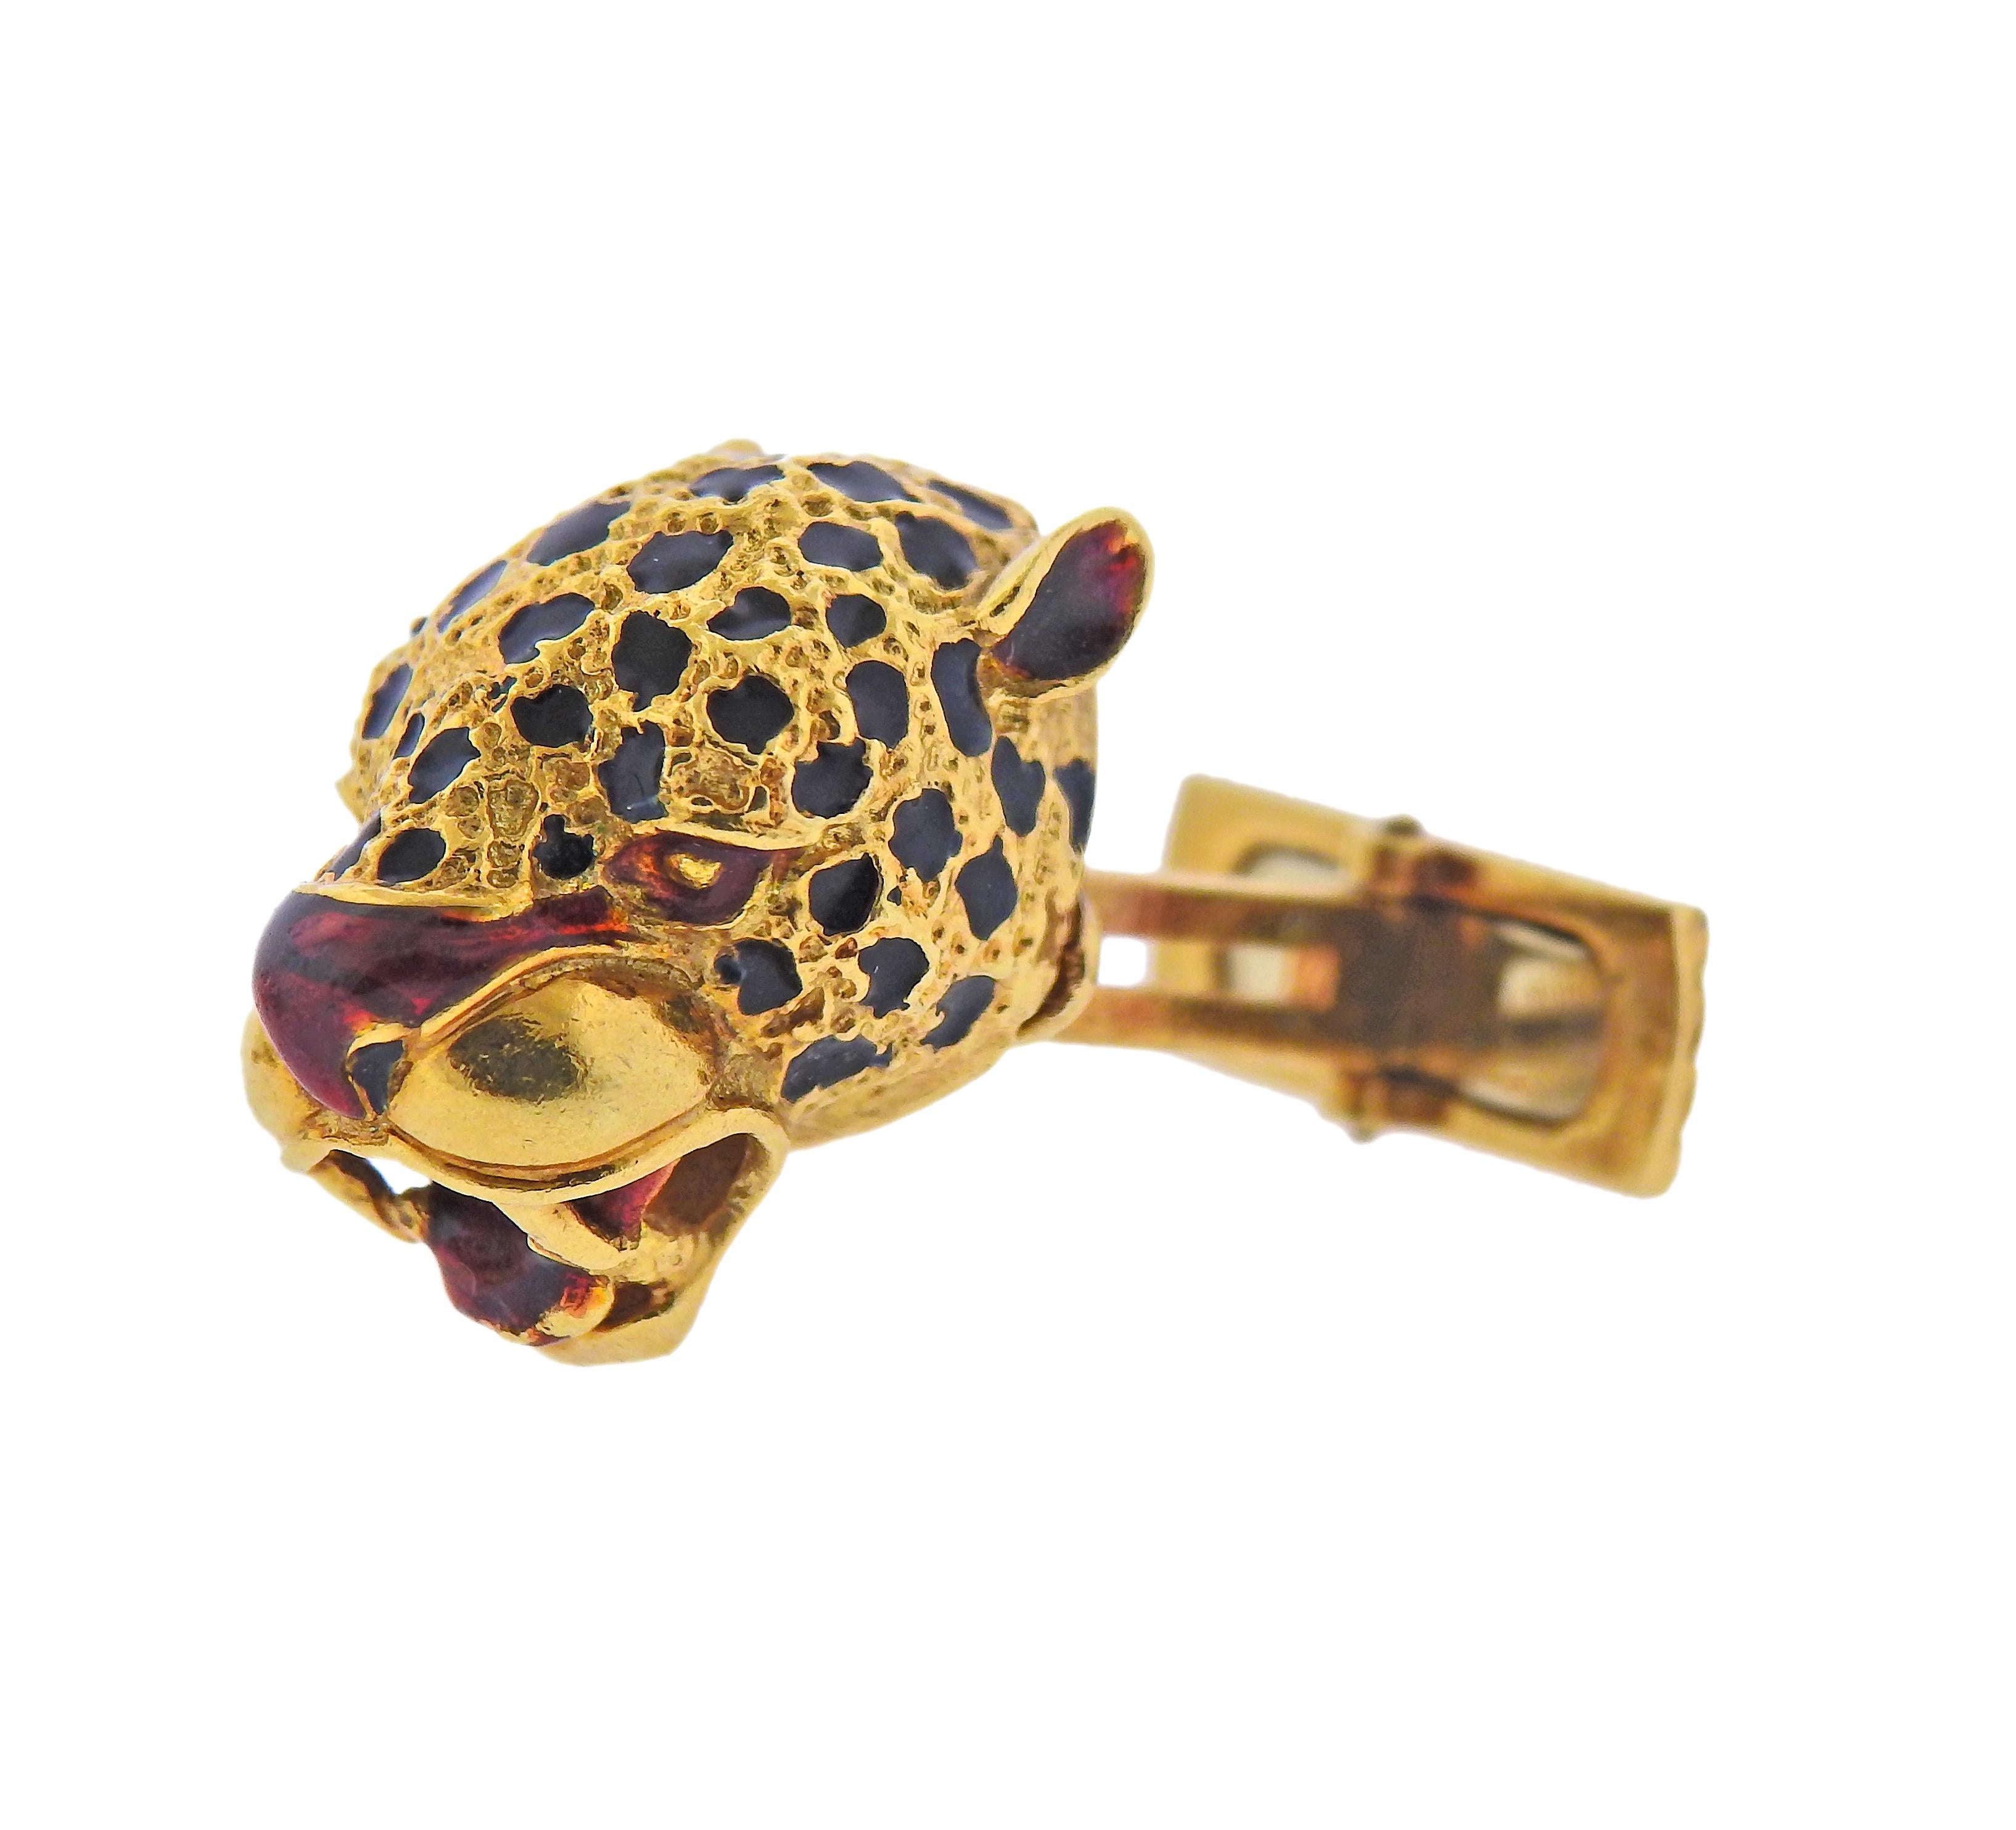 Ein Paar Manschettenknöpfe aus 18 Karat Gelbgold mit Jaguar, verziert mit Emaille. Der obere Teil des Manschettenknopfes ist 20 mm x 16 mm groß. Gewicht: 20 Gramm. 